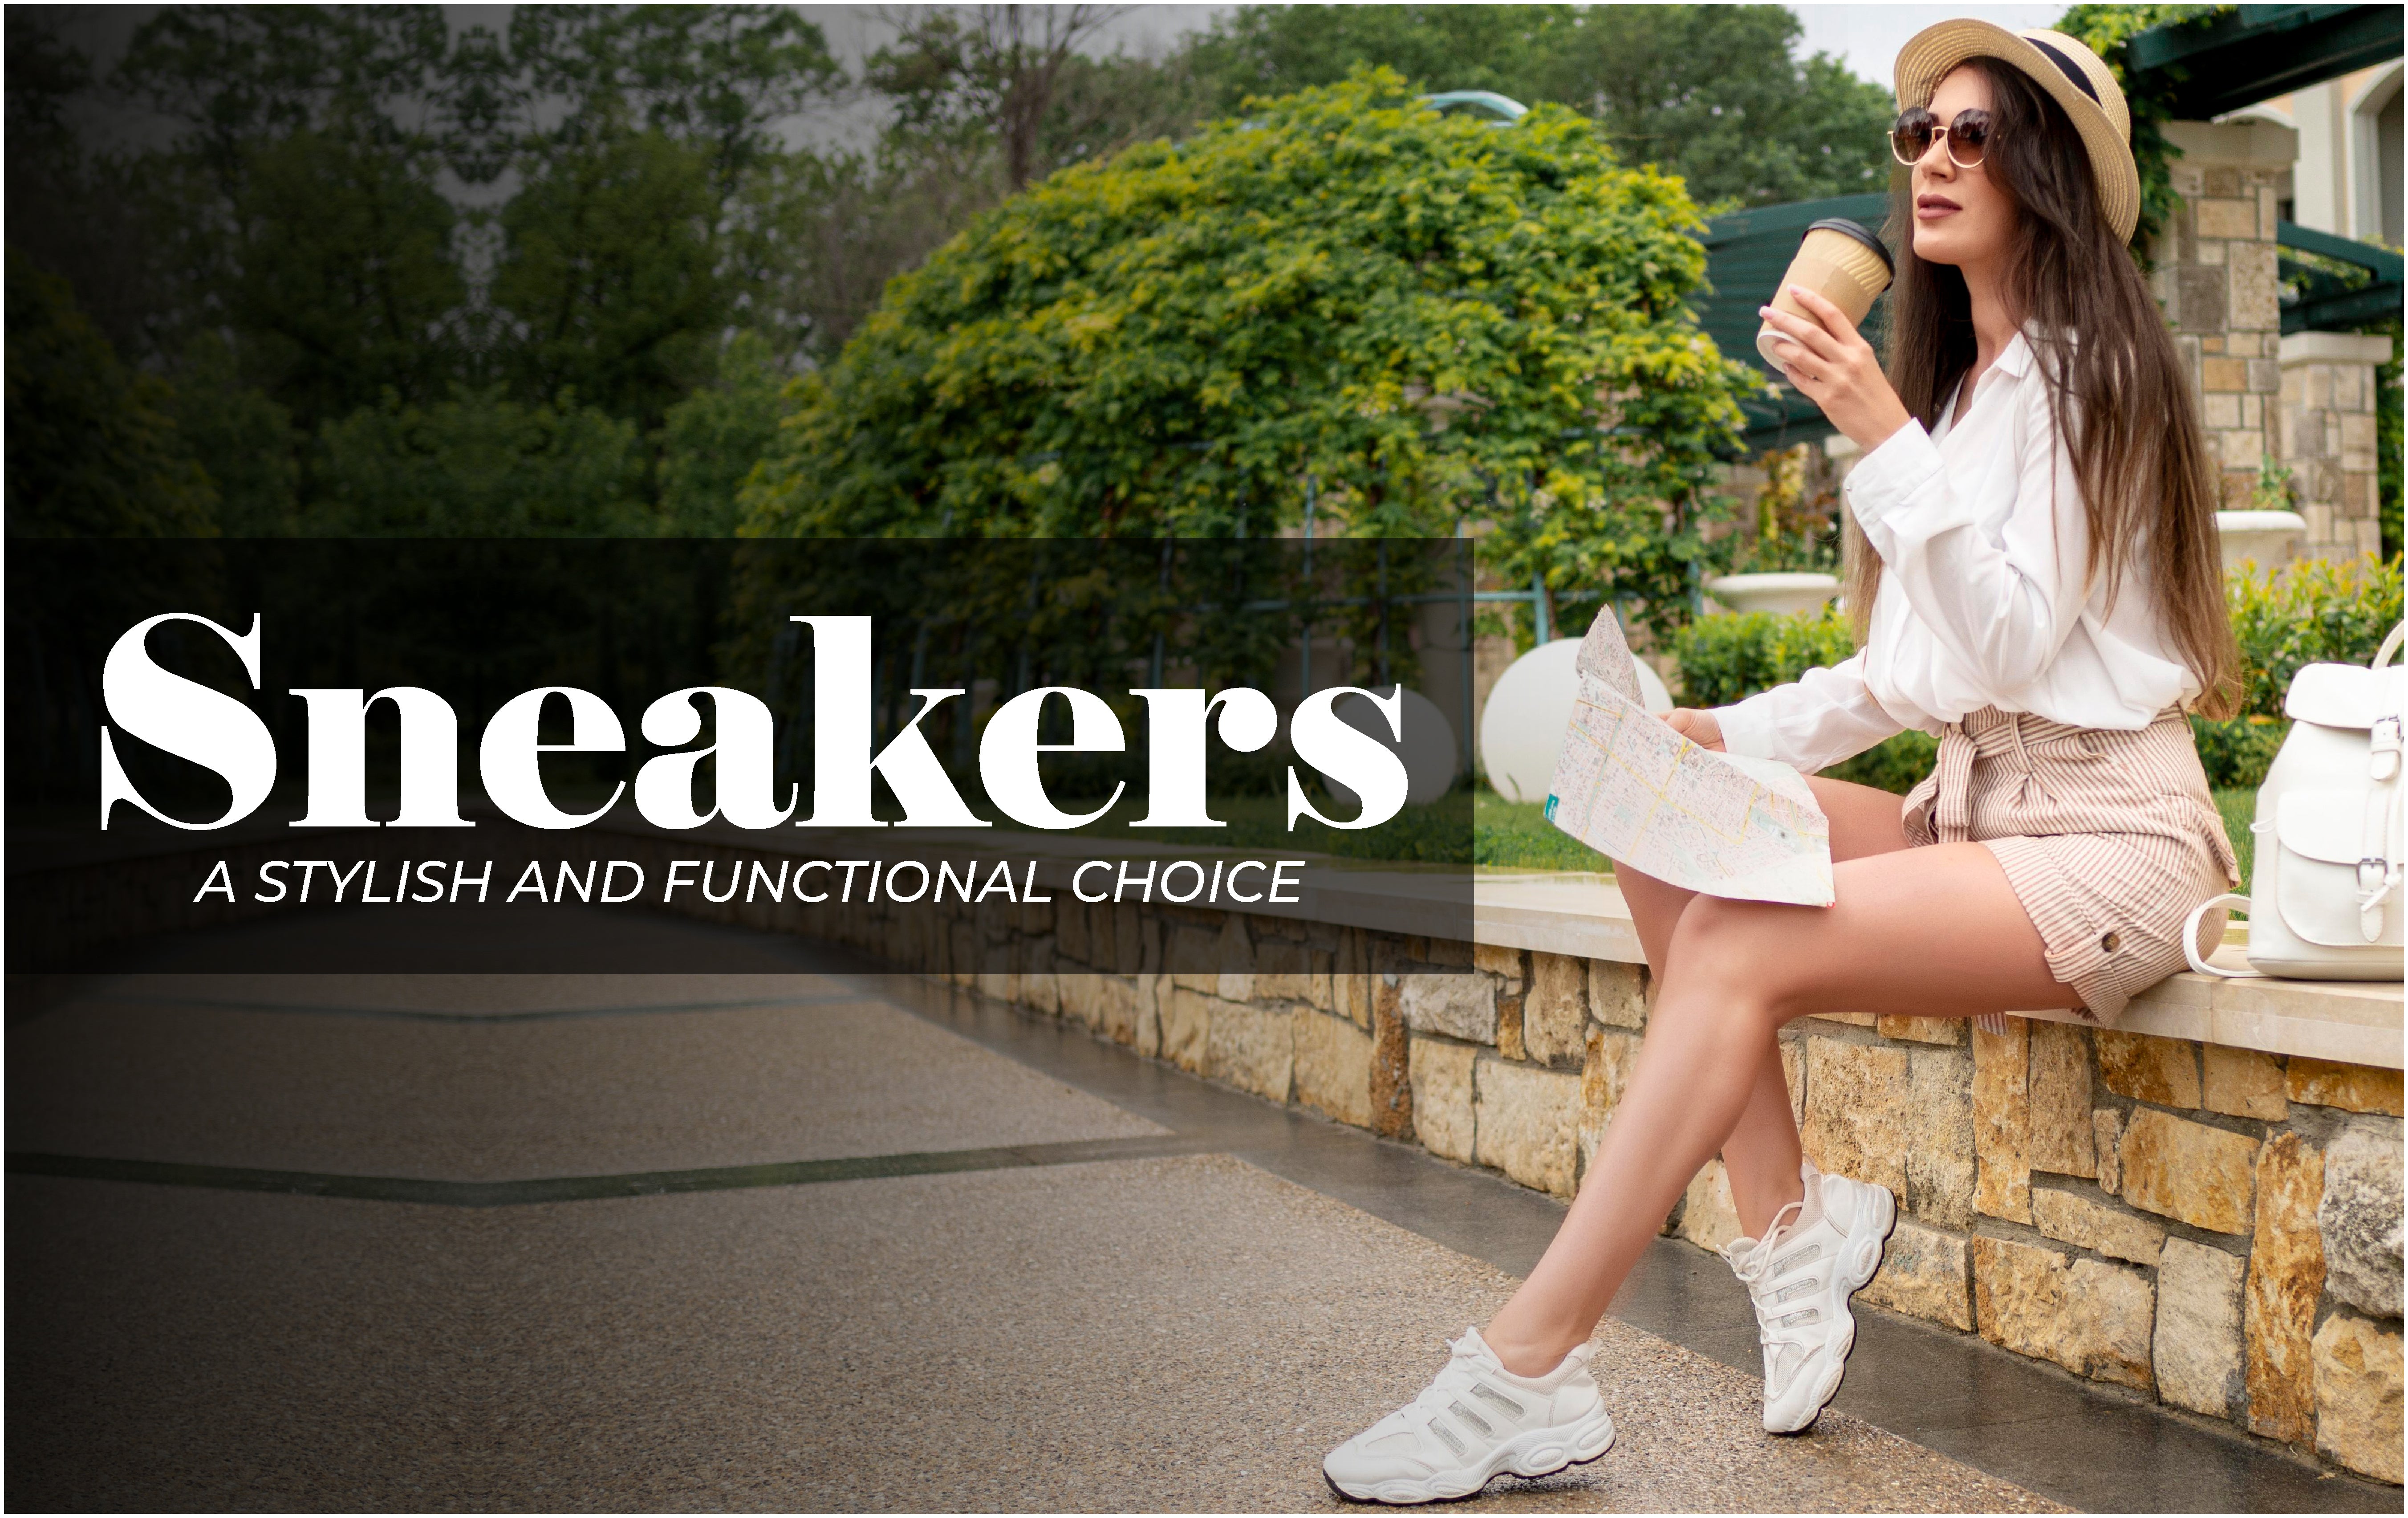 Zapatillas para mujeres: una elección elegante y funcional